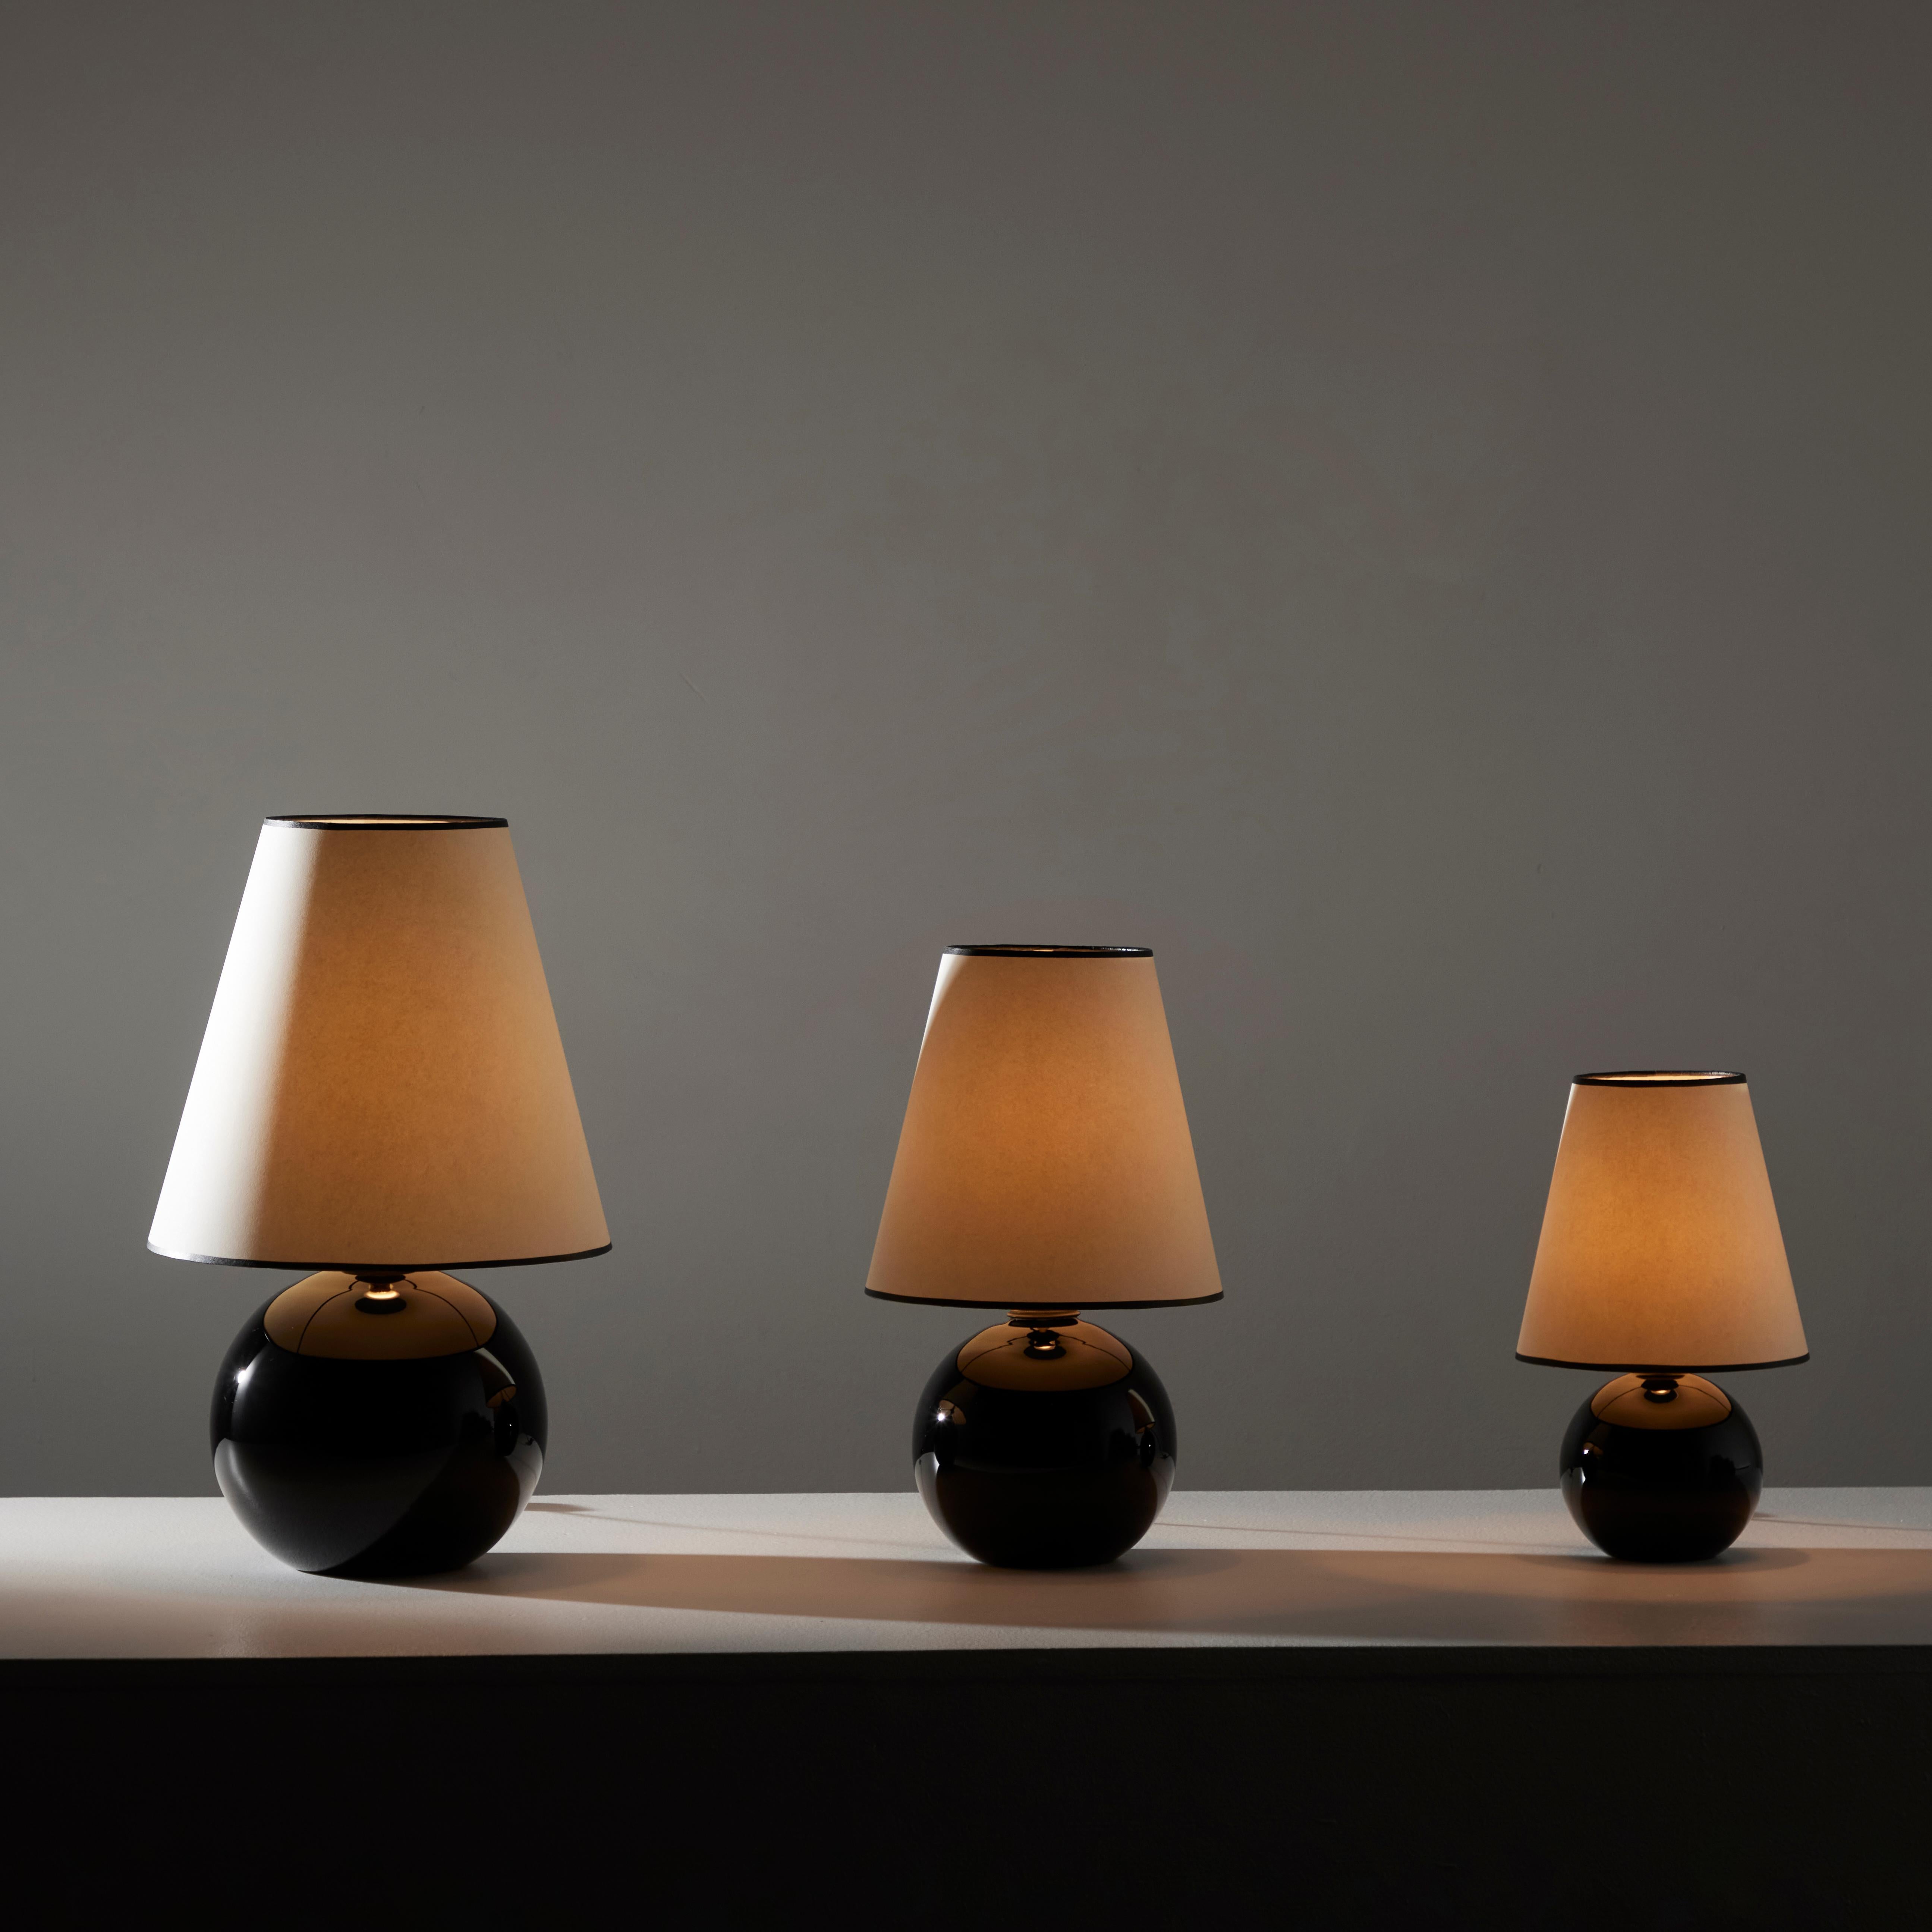 Lot de lampes de table en opaline noire par Jacques Adnet. Conçu et fabriqué en France, vers les années 1940. Base sphérique en opaline noire avec un abat-jour en lin nouvellement fabriqué. Chaque lampe est équipée d'une douille à baïonnette B22